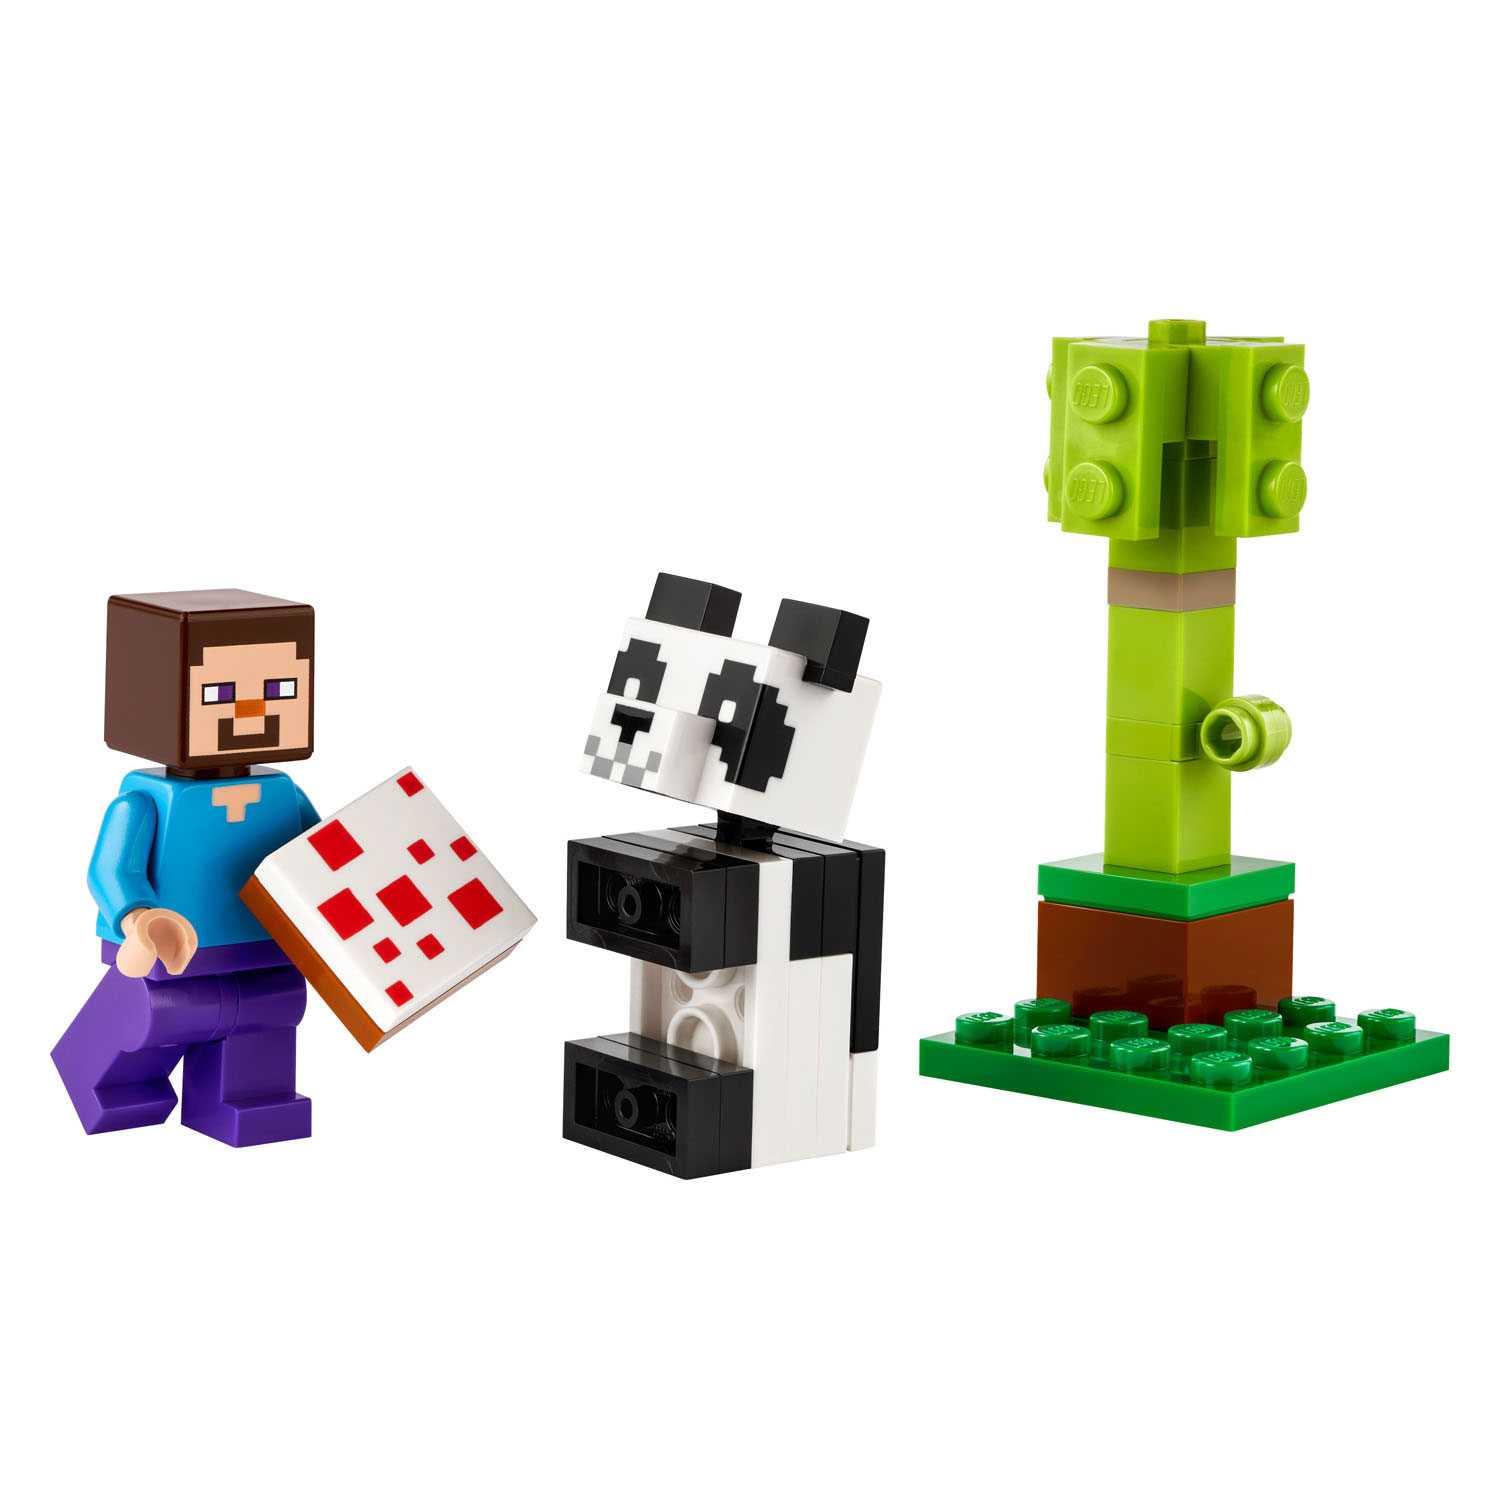 LEGO Minecraft 30672 Steve en Babypanda